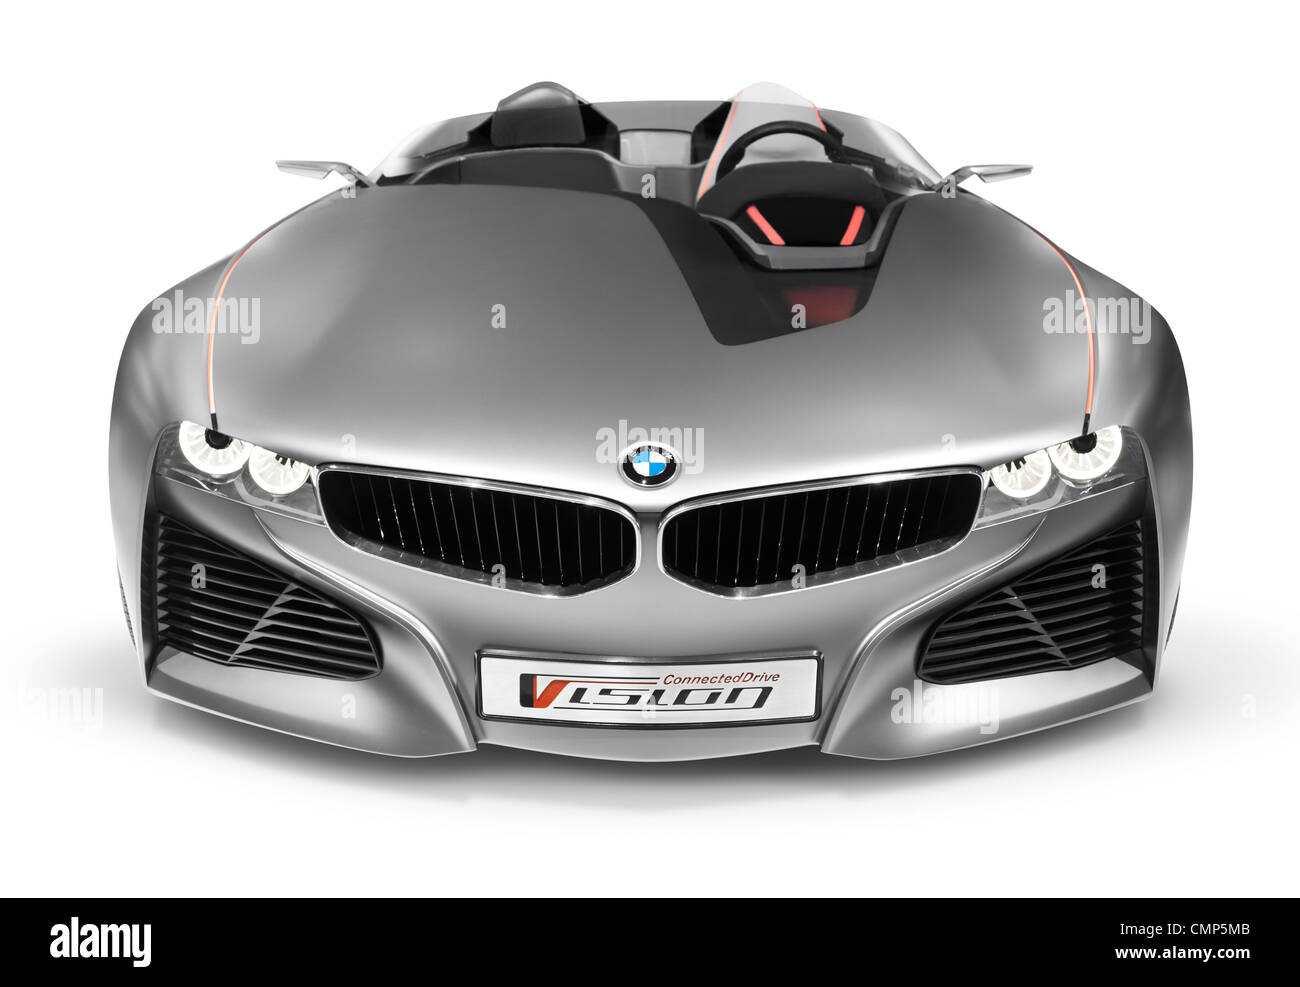 Führerschein und Ausdrucke bei MaximImages.com - 2012 BMW Vision ConnectedDrive Concept Sportwagen Frontansicht isoliert auf weißem Hintergrund mit Clipping-Pfad Stockfoto